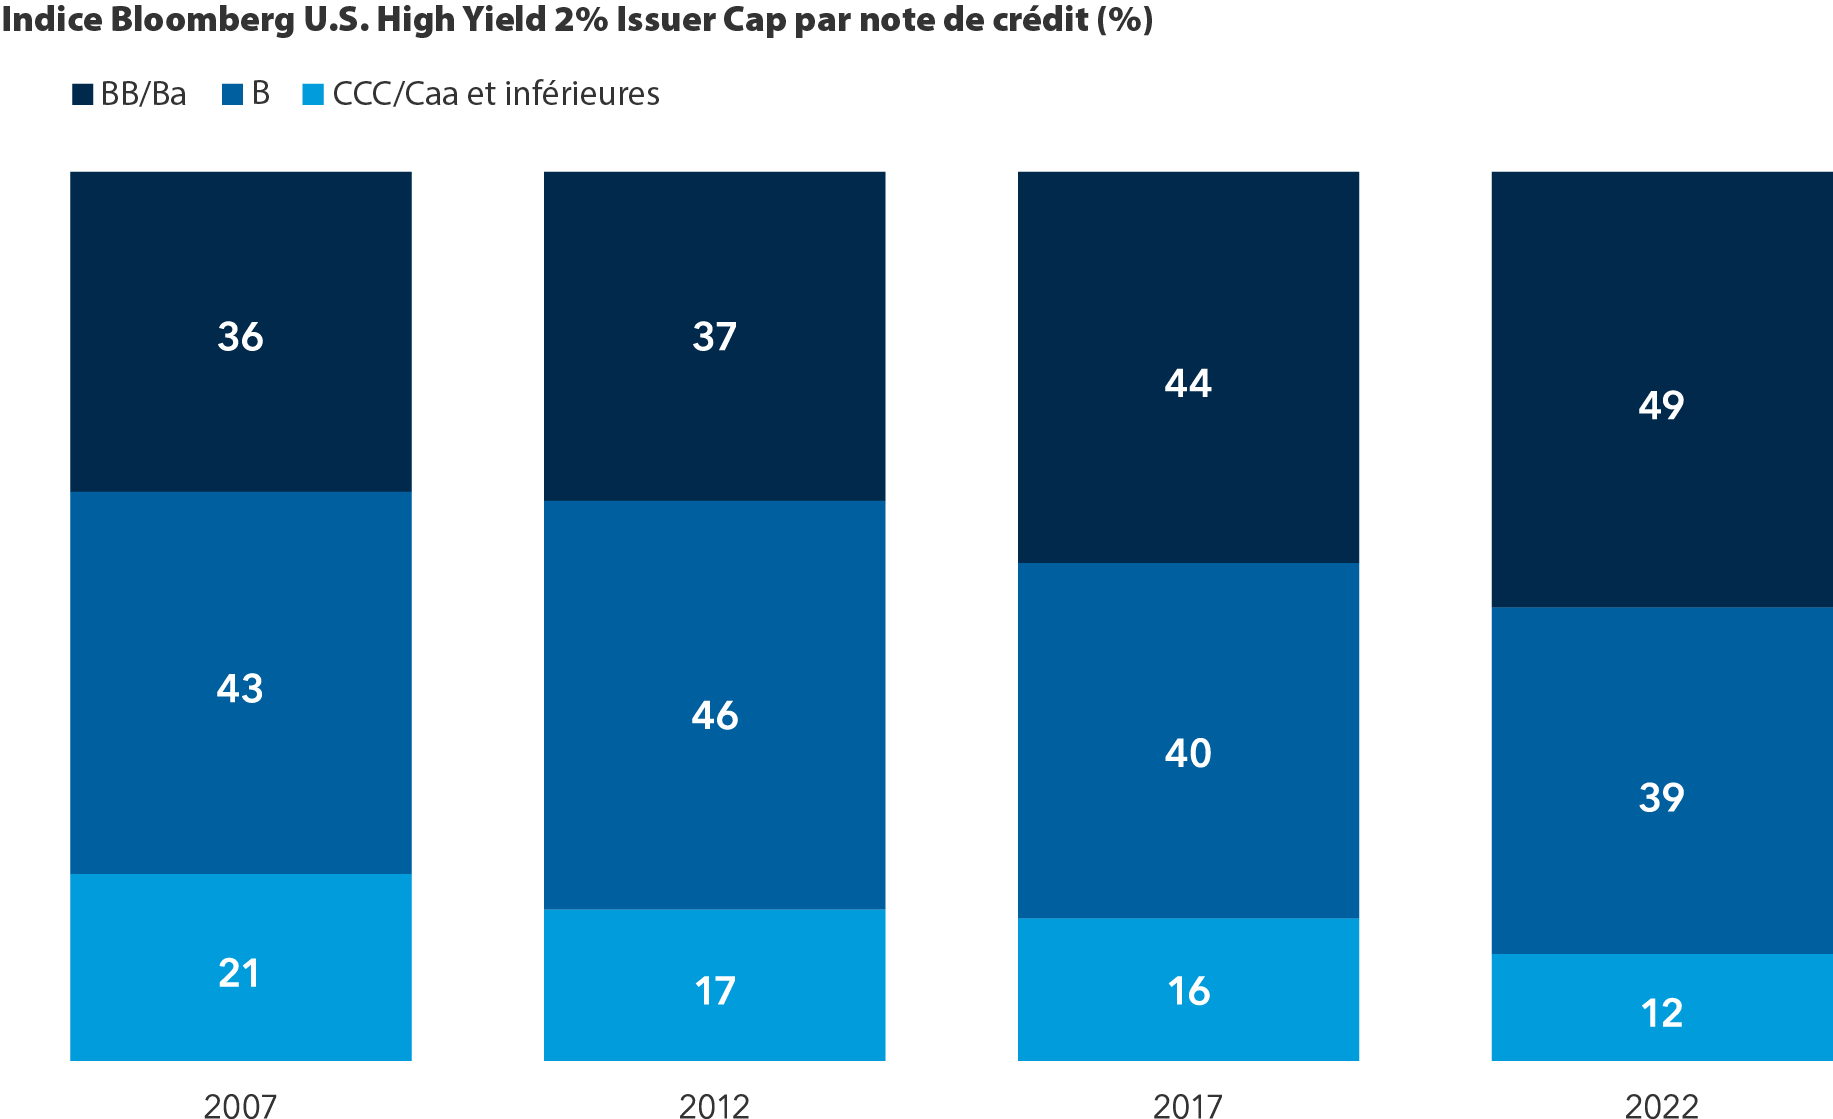 L’image présente la répartition des notations en pourcentage de l’indice Bloomberg U.S. High Yield 2% issuer Cap pour les années 2007, 2012, 2017 et 2022. La qualité de l’univers des obligations à rendement élevé s’est améliorée entre 2007 et 2022. En 2007, la notation BB/Ba de qualité supérieure représentait 36 % des obligations à rendement élevé, la notation B en représentait 43 % et la notation CCC/Caa en représentait 21 %. En 2012, la notation BB/Ba de qualité supérieure représentait 37 % des obligations à rendement élevé, la notation B en représentait 46 % et la notation CCC/Caa en représentait 17 %. En 2017, la notation BB/Ba de qualité supérieure représentait 44 % des obligations à rendement élevé, la notation B en représentait 40 % et la notation CCC/Caa en représentait 16 %. En 2022, la notation BB/Ba de qualité supérieure représentait 49 % des obligations à rendement élevé, la notation B en représentait 39 % et la notation CCC/Caa en représentait 12 %.